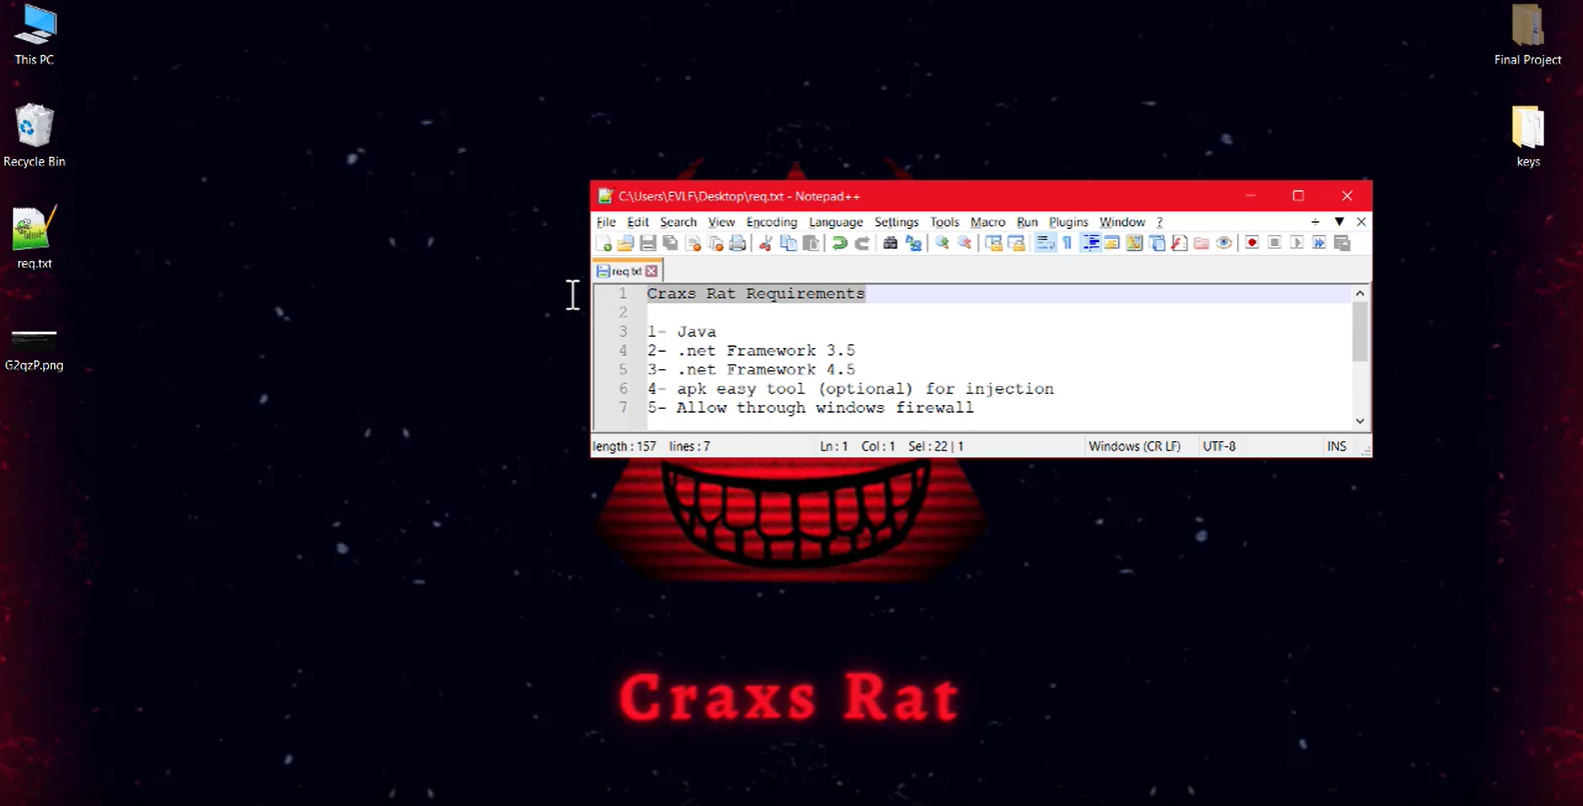 Craxs RAT HOST